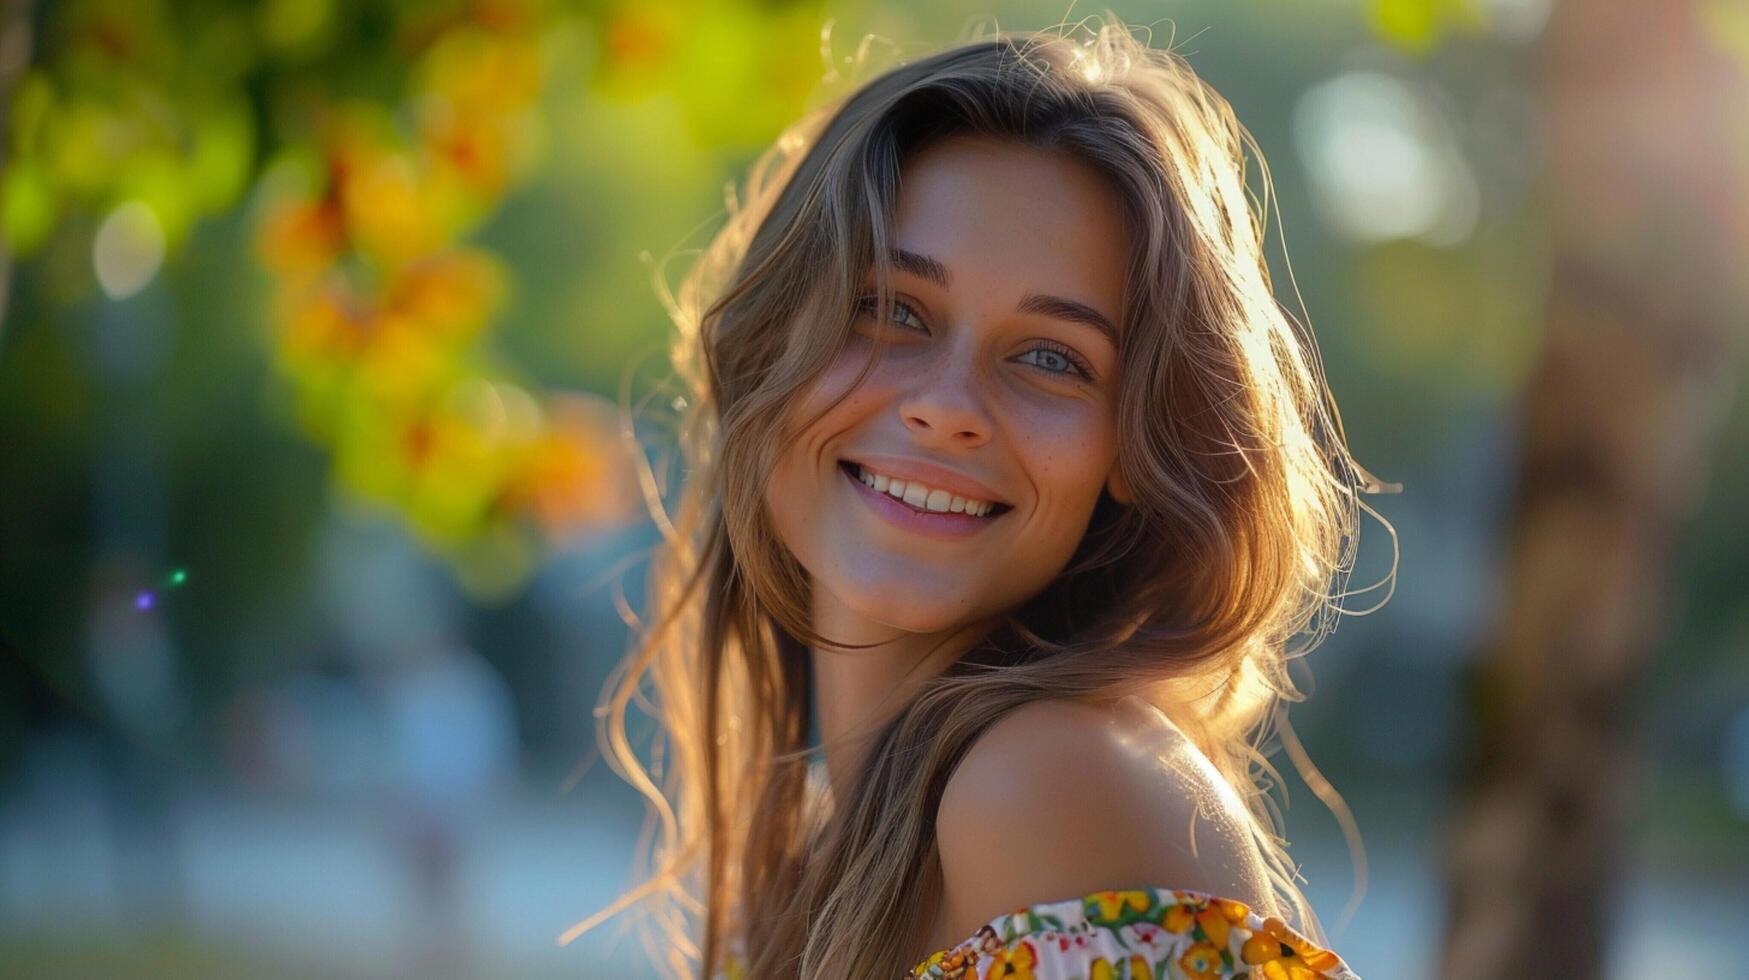 lindo jovem mulher dentro uma verão vestir sorridente foto